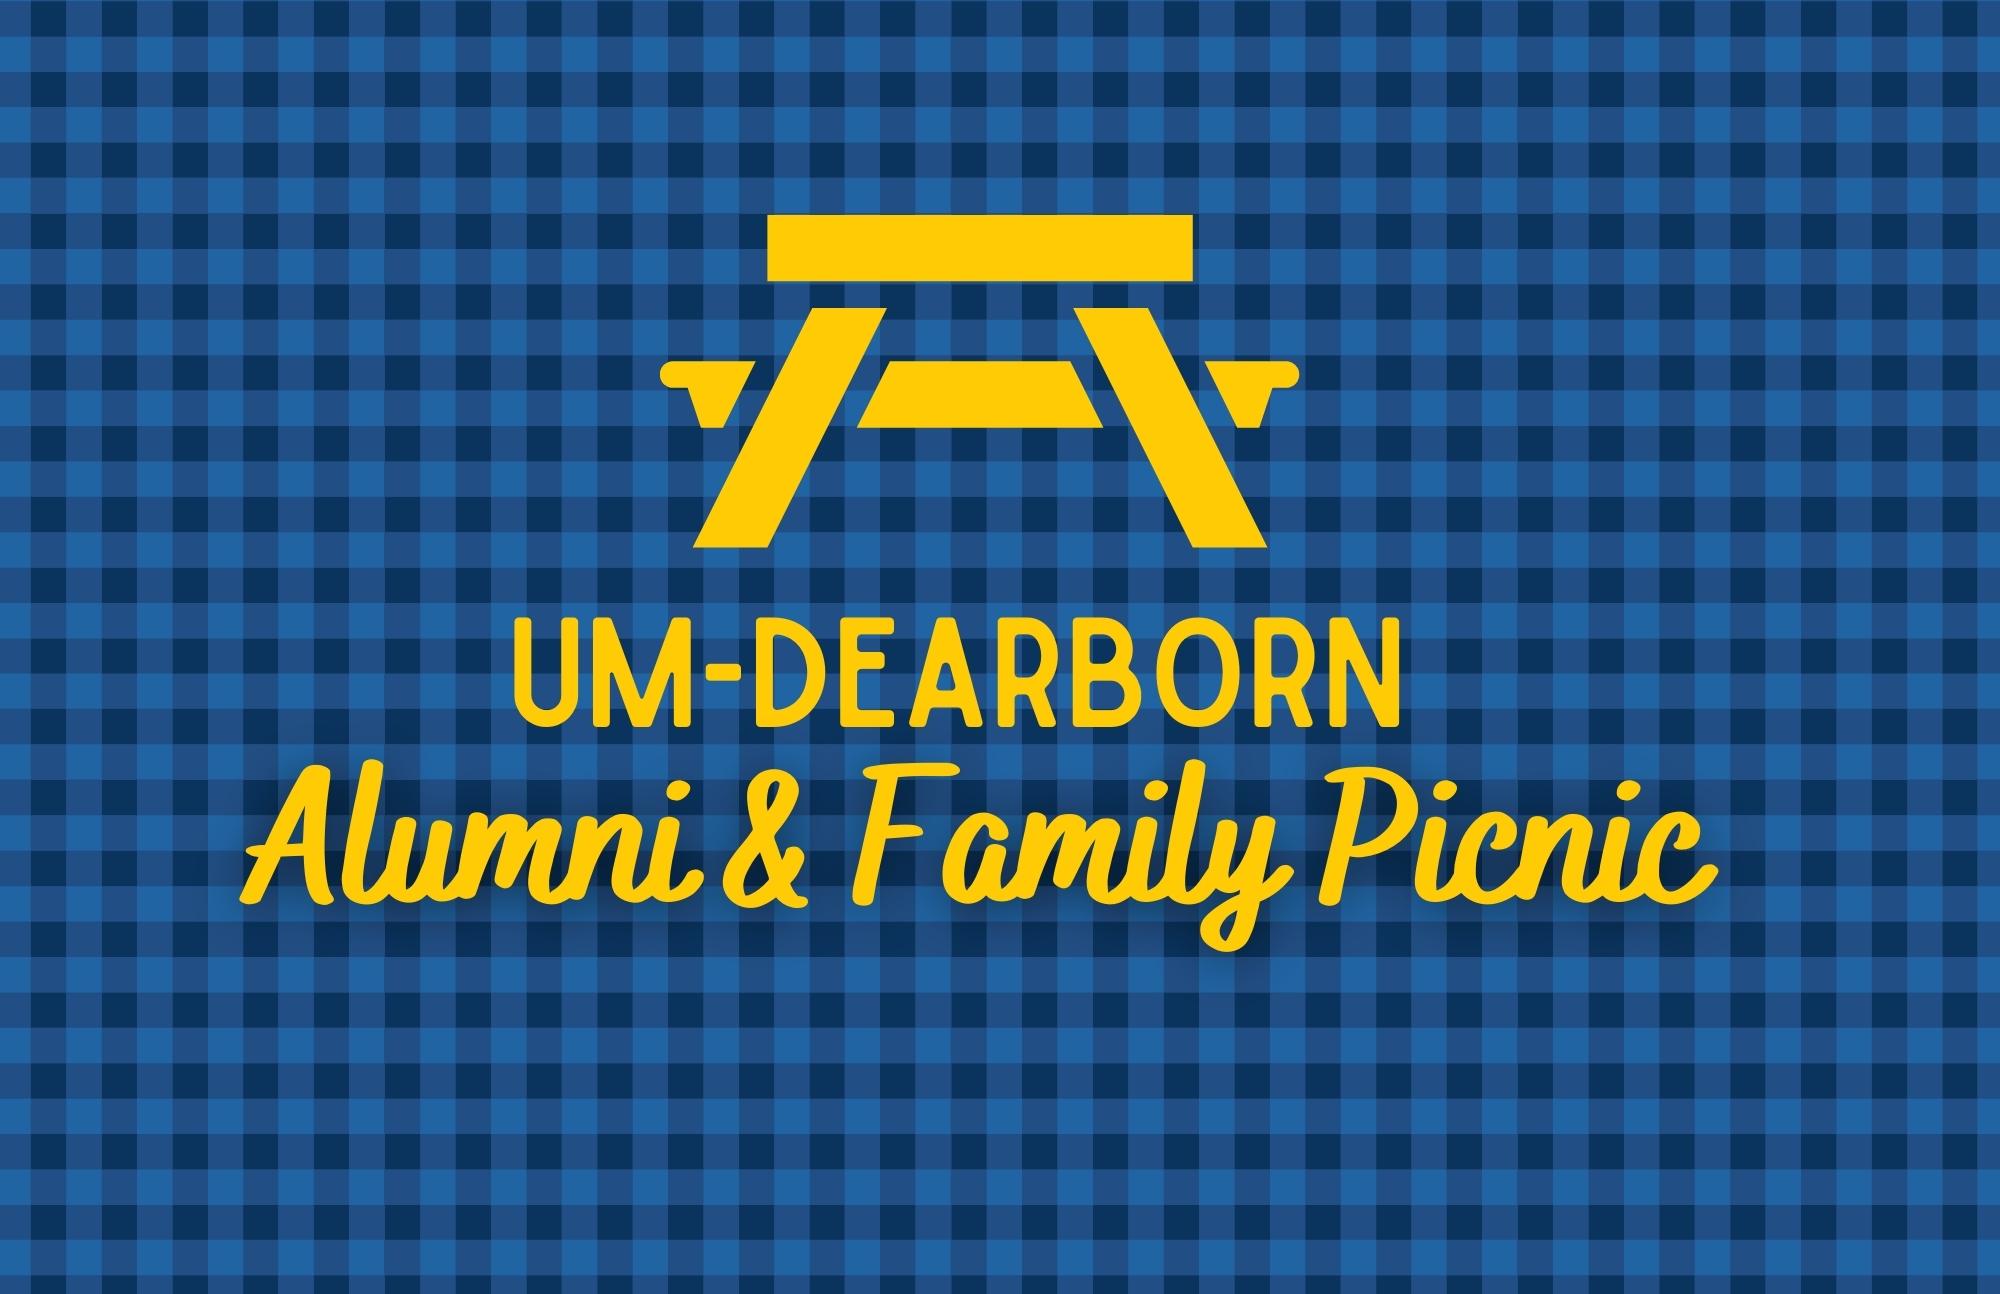 UM-Dearborn Alumni & Family Picnic